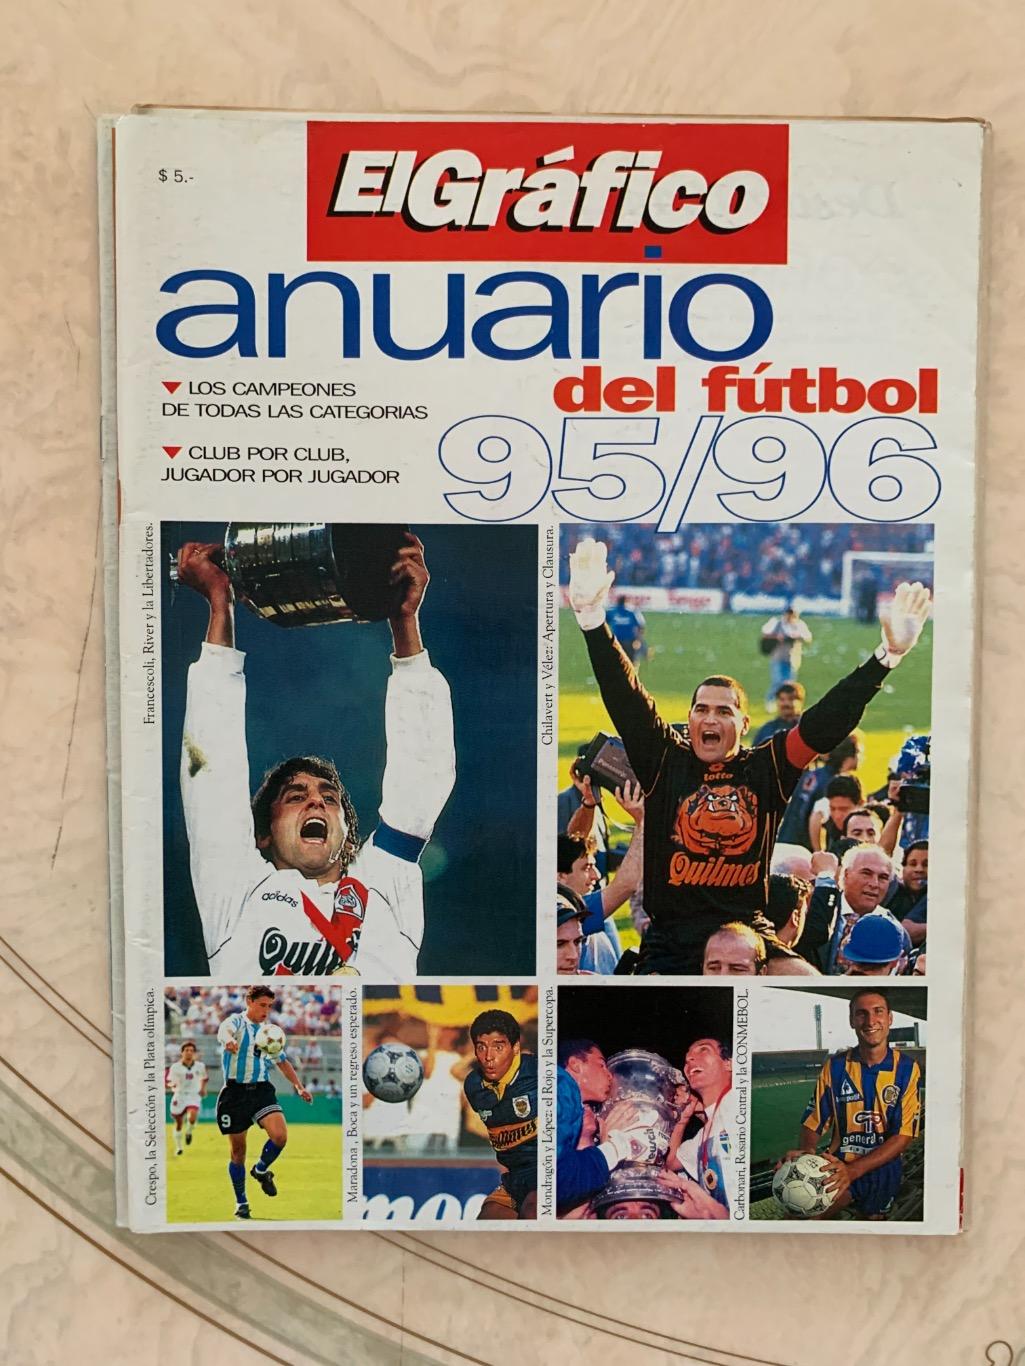 El Grafico чемпионат Аргентины 1995/96